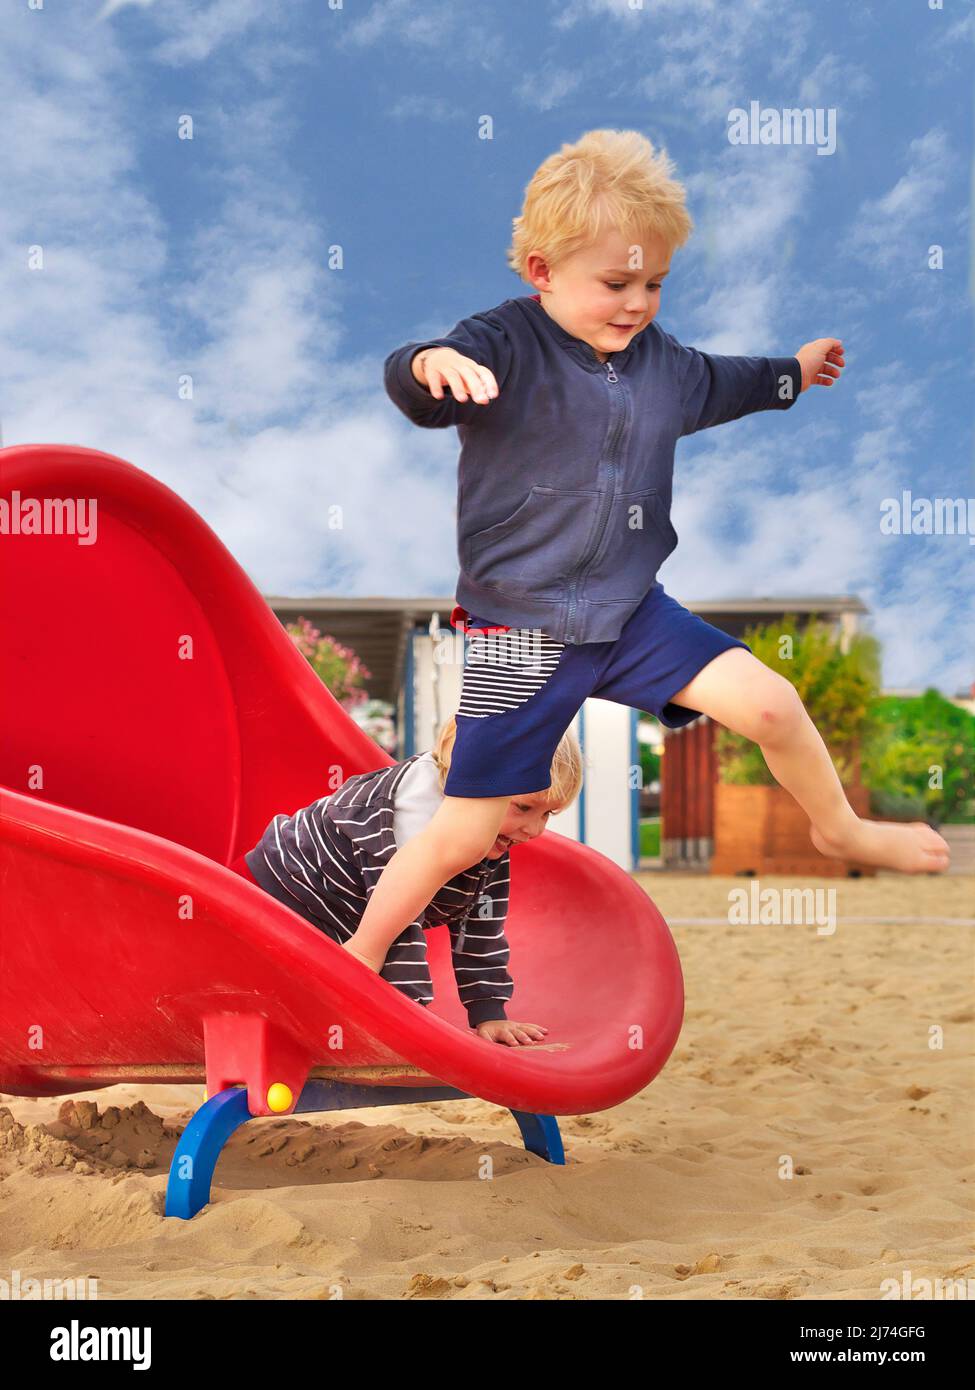 la photo montre un garçon qui saute d'un toboggan; le toboggan est près de la plage Banque D'Images